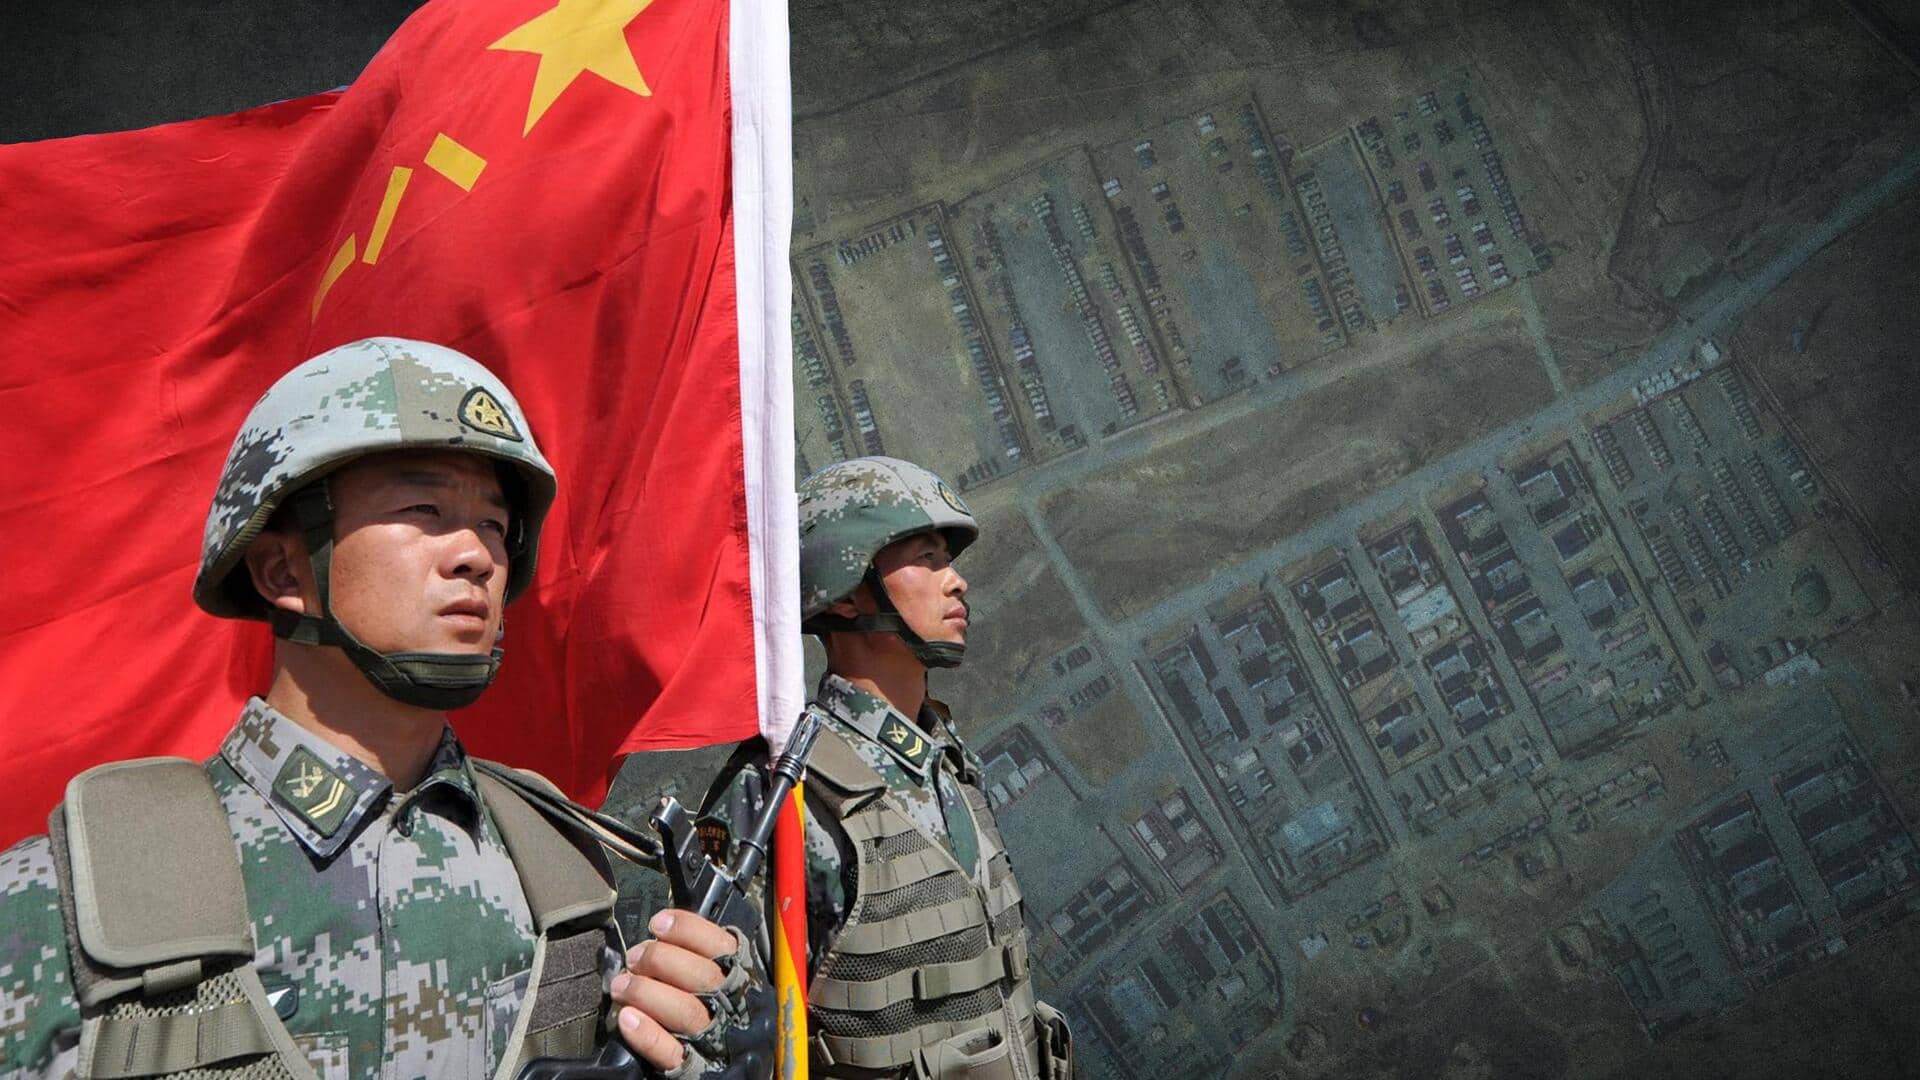 अरुणाचल प्रदेश के तवांग में चीन ने तैनात की अपनी संयुक्त शस्त्र ब्रिगेड- रिपोर्ट